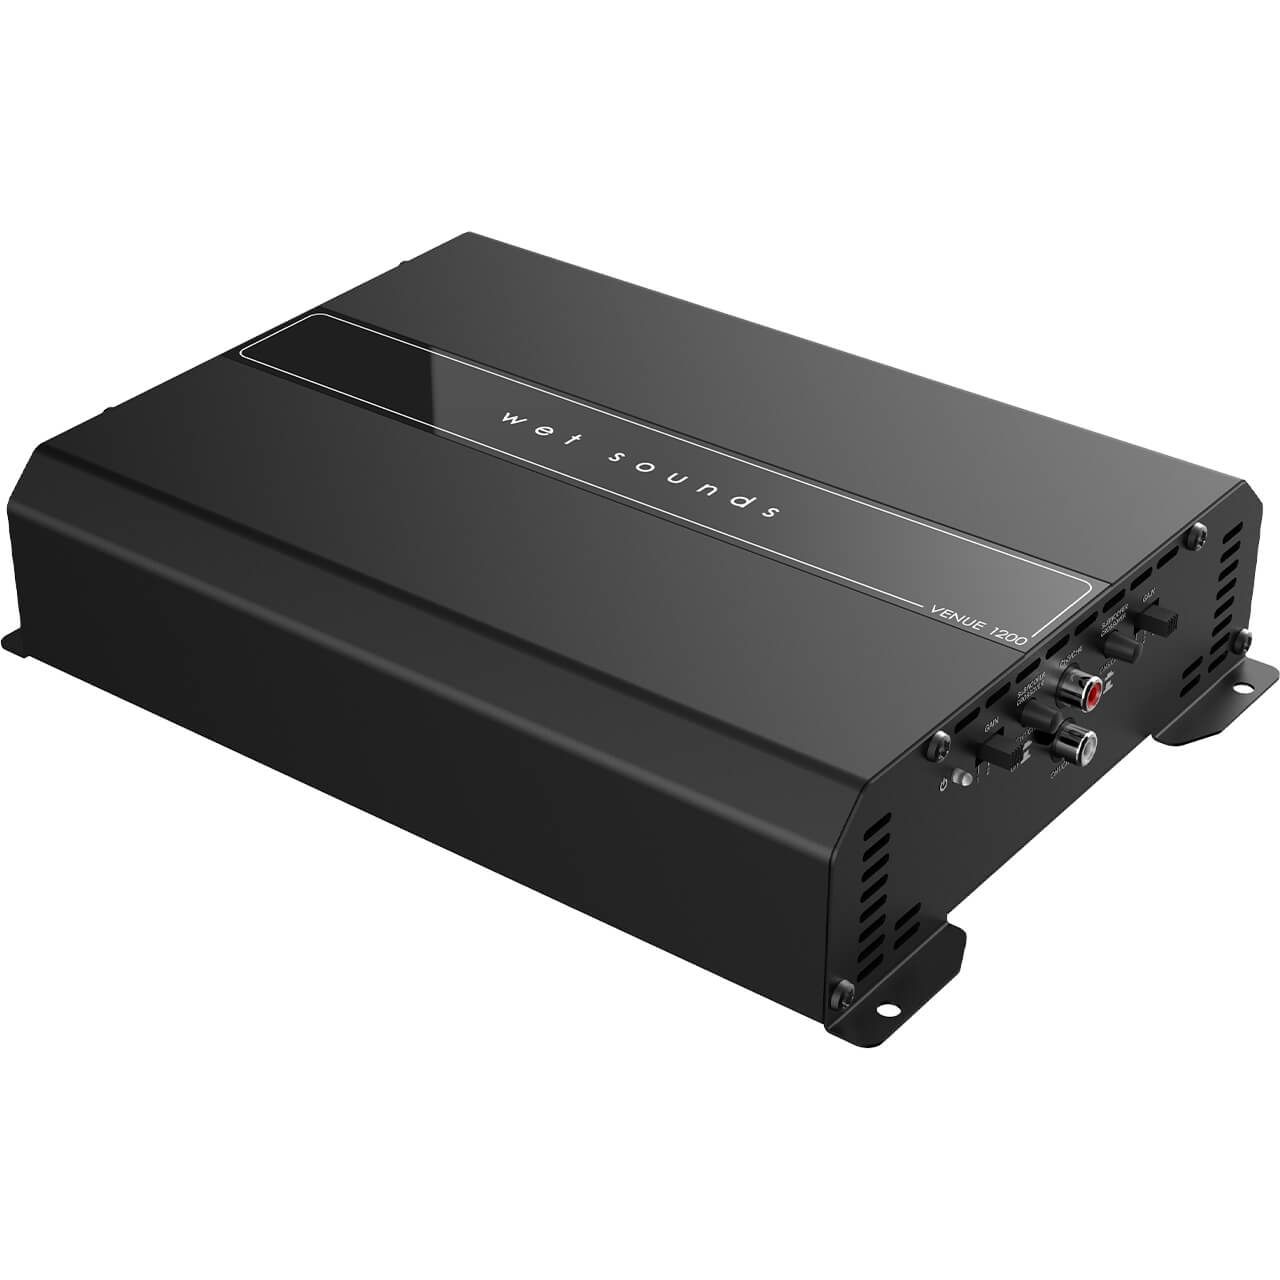 Amplificador de 4 canales con gabinete Wet Sounds VS-AMPLIFIER SYSTEM-4 110v, 1200W Venue Series